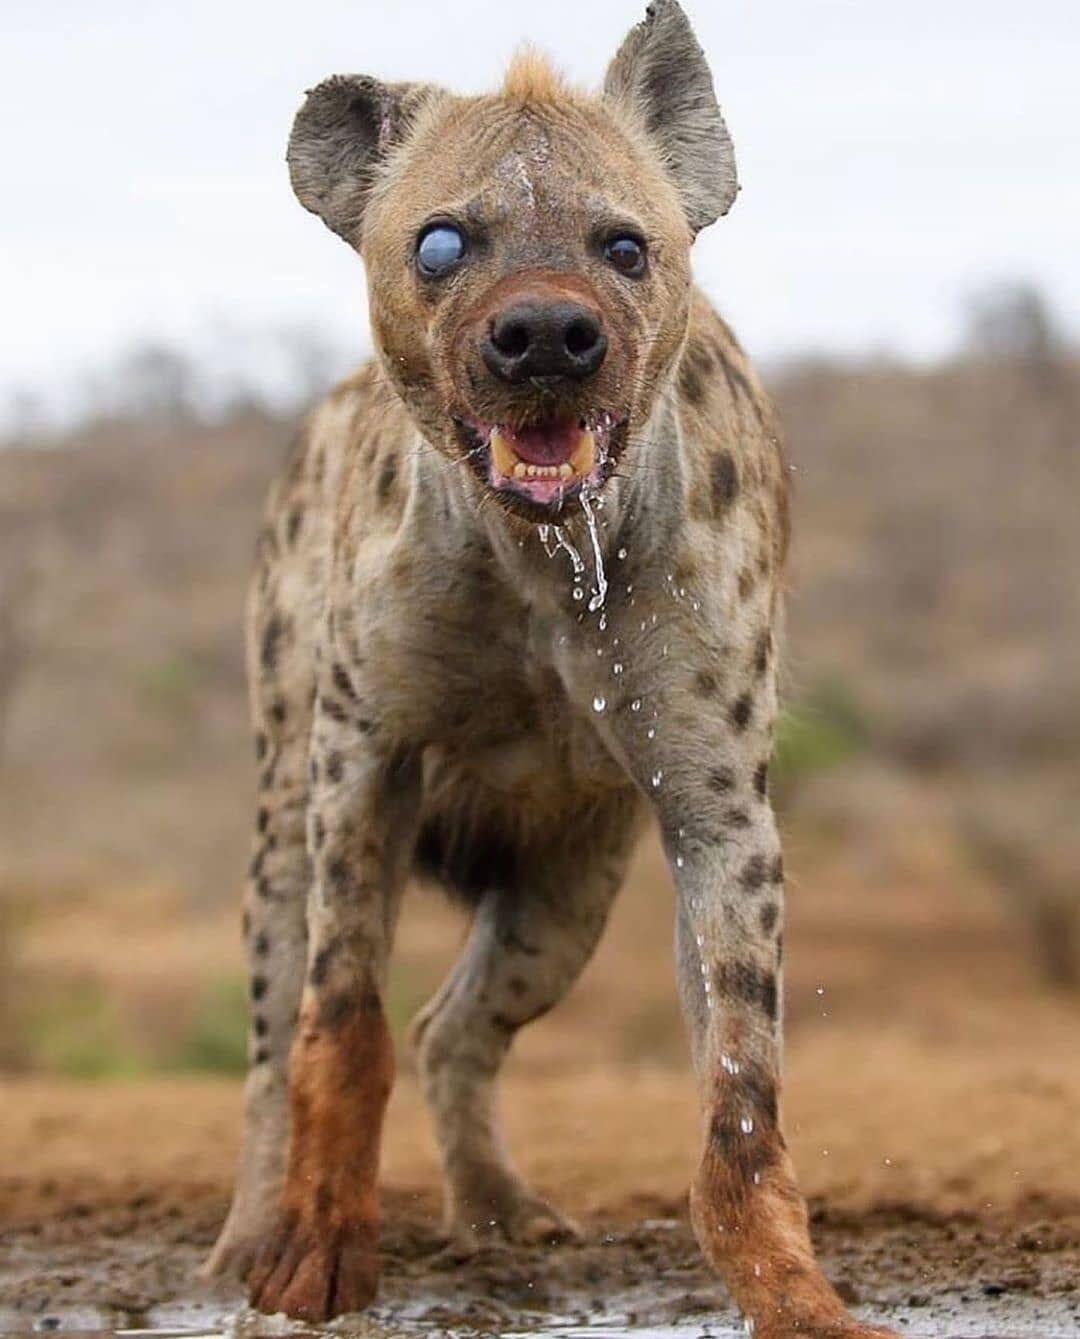 una iena senza un occhio, probabile ferita di caccia